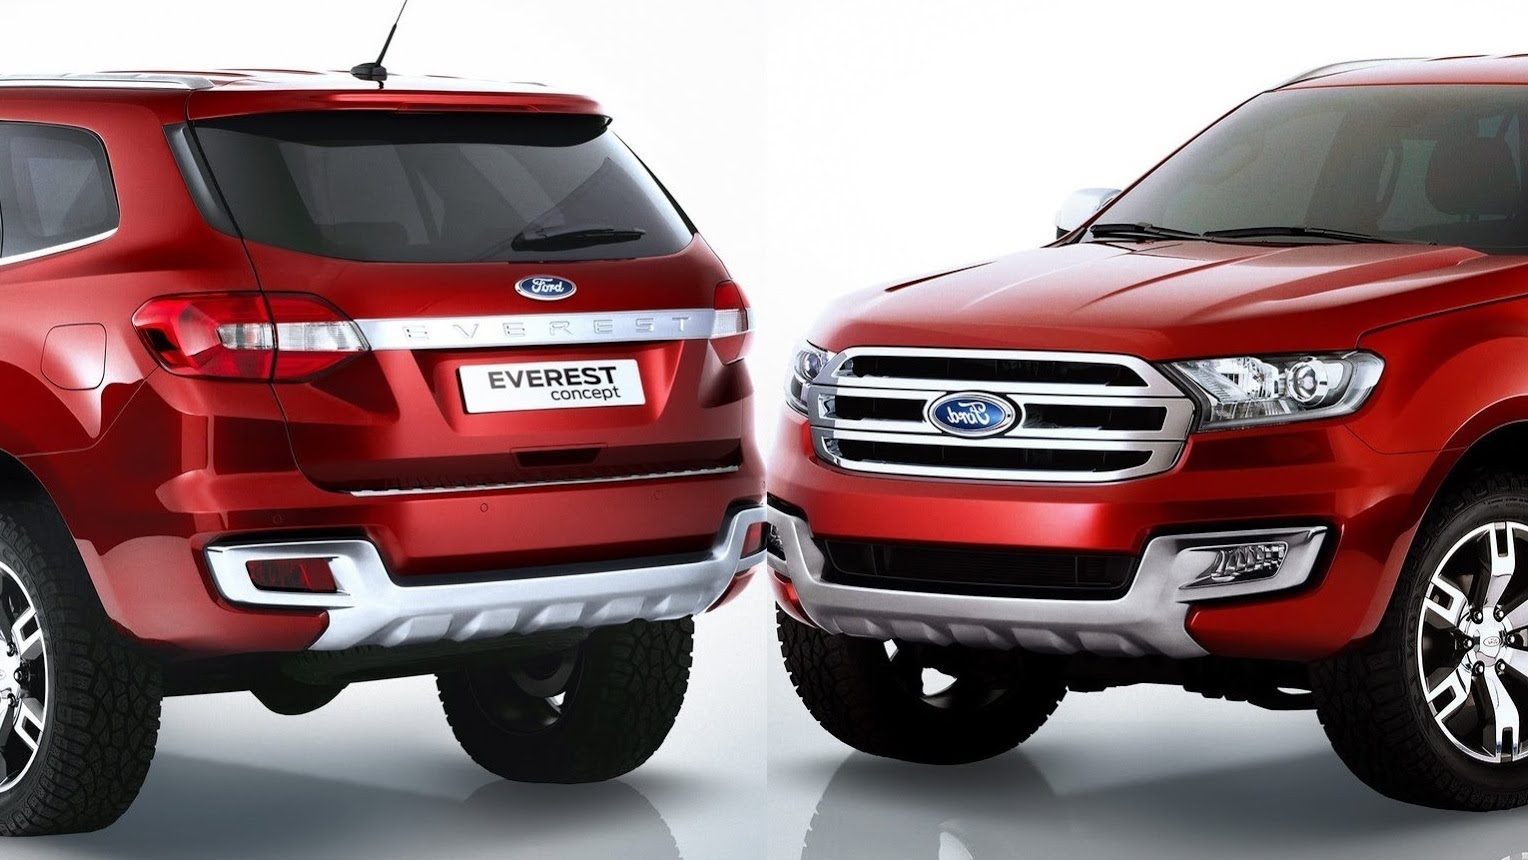 Ford Everest 2015 bán ra với 3 bản trang bị với giá từ 1,249 tỷ đến 1,629 tỷ đồng